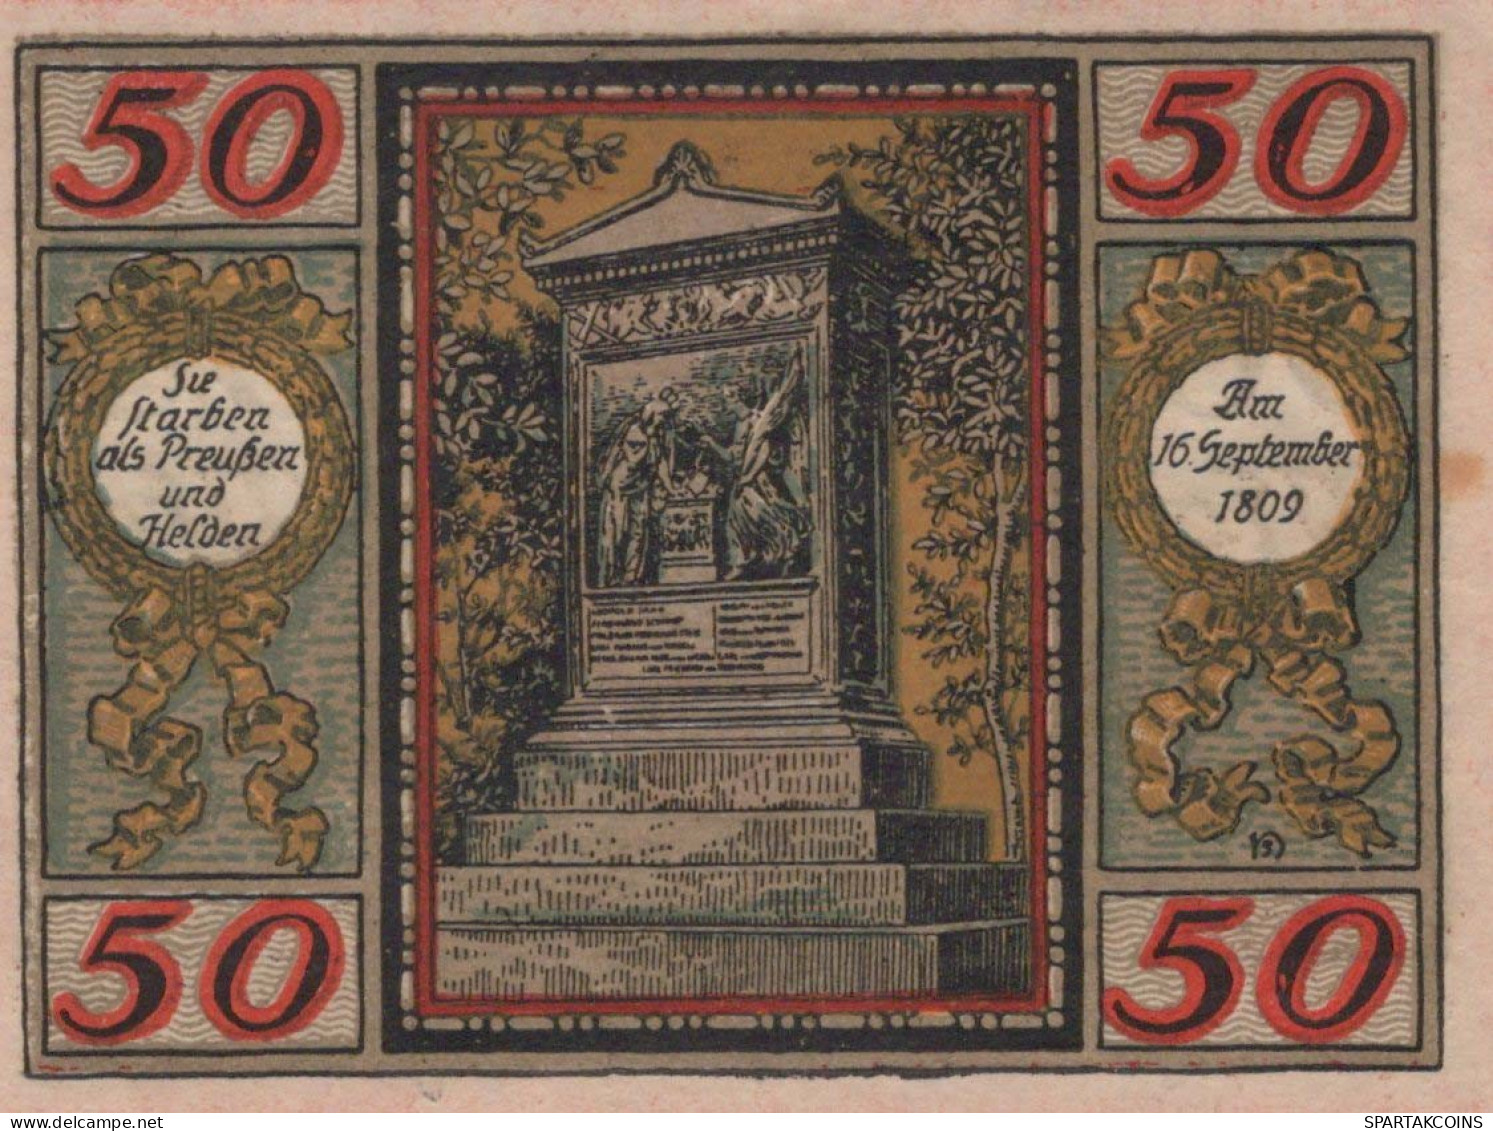 50 PFENNIG 1921 Stadt WESEL Rhine UNC DEUTSCHLAND Notgeld Banknote #PH673 - [11] Local Banknote Issues